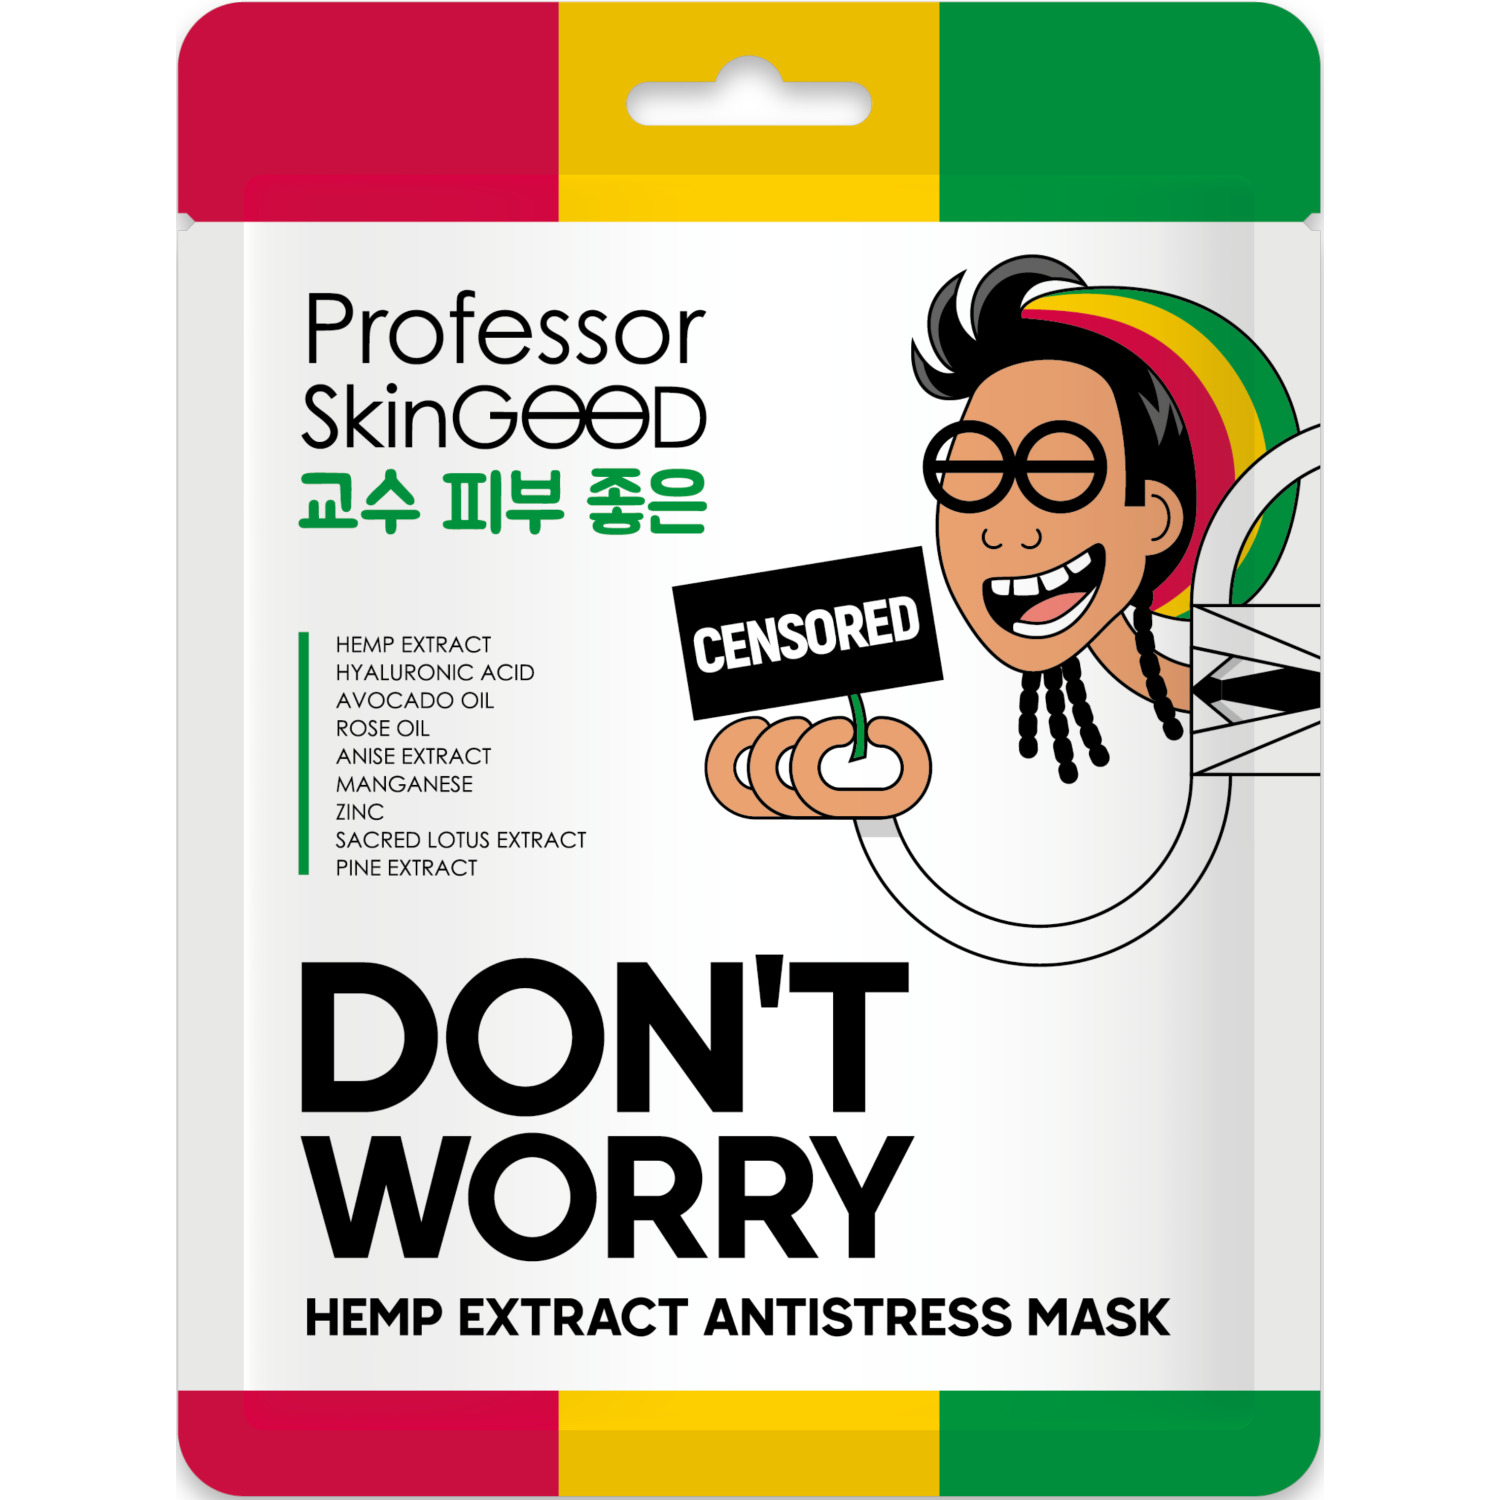 Маска для лица Professor SkinGOOD Hemp Extract Antistress Mask с экстрактом конопли, 25 мл 45 игр лабиринтов находилок с веселой семейкой